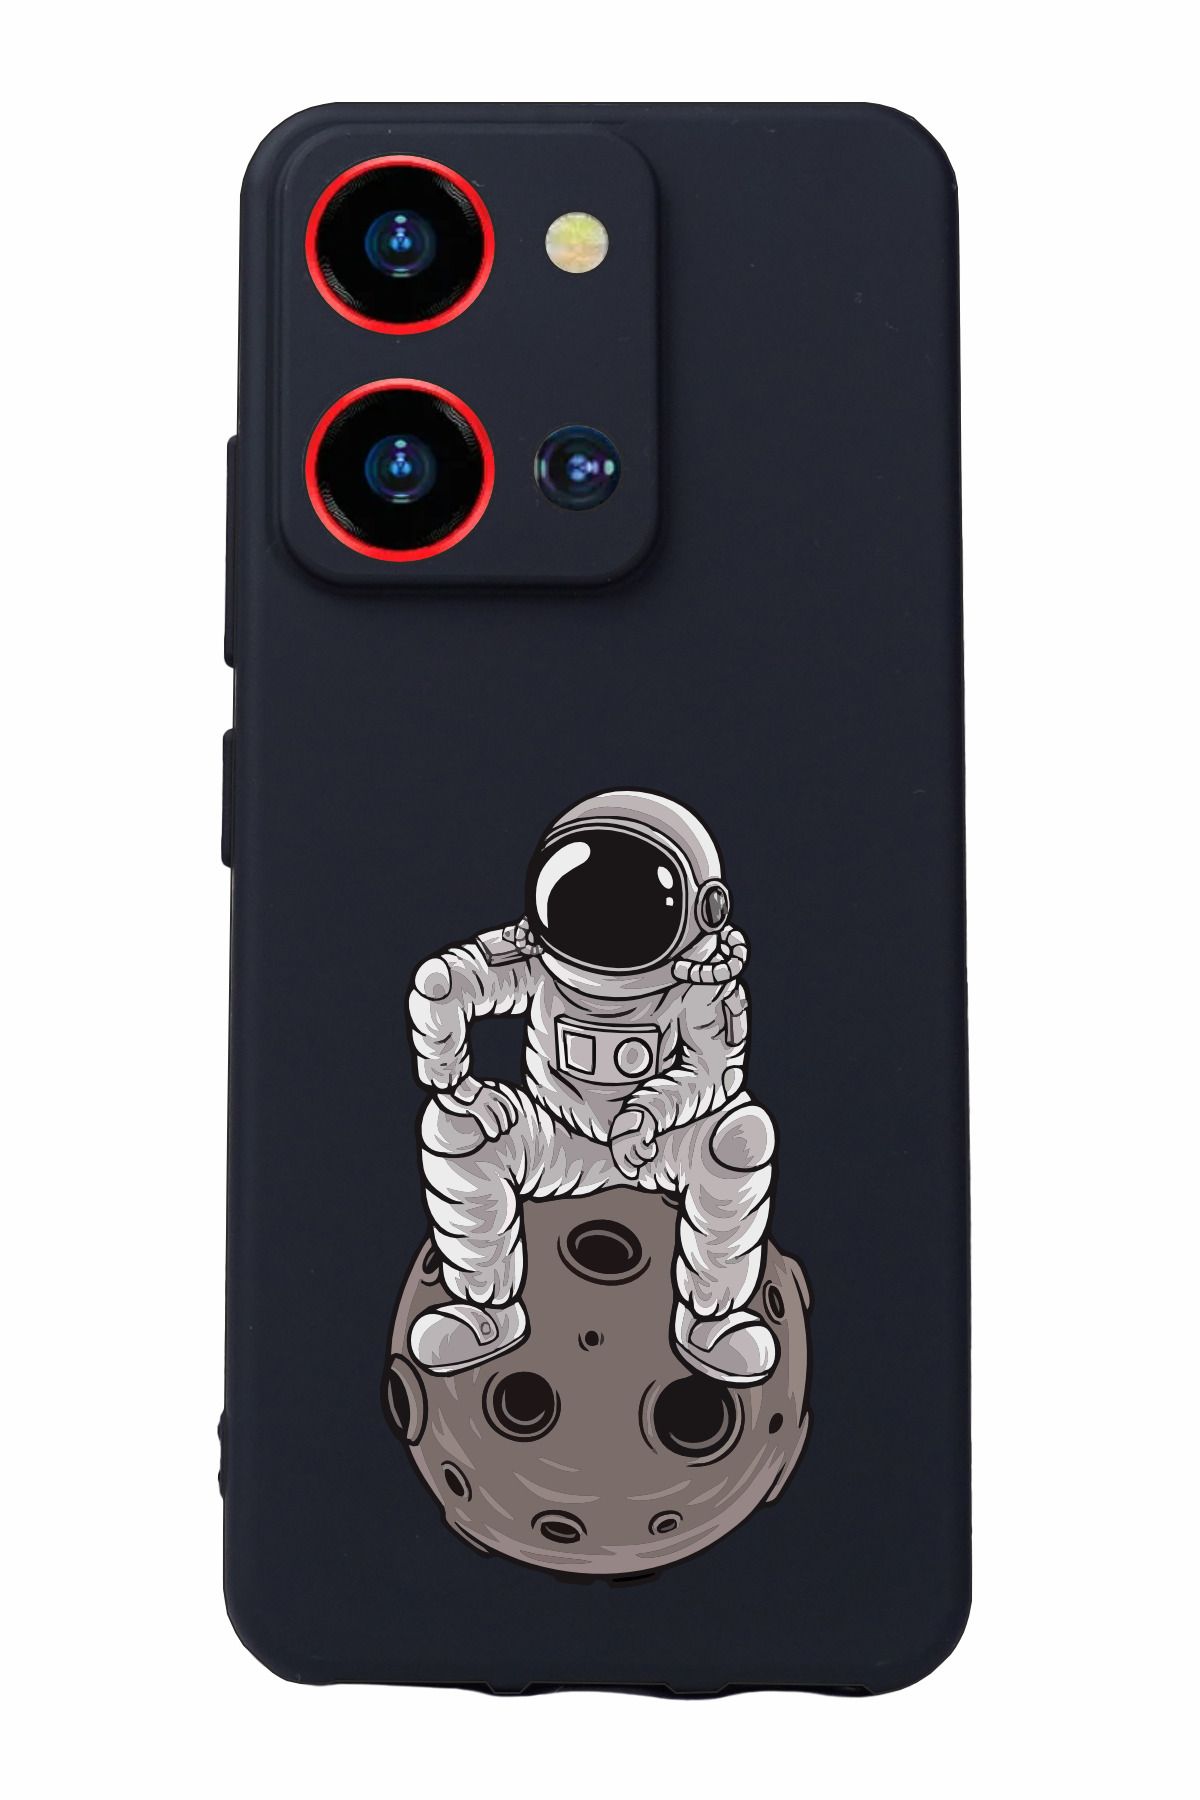 Reeder S19 Max Pro S Zoom Uyumlu Kamera Korumalı ve Tasarımlı Siyah Renk Silikon Kılıf